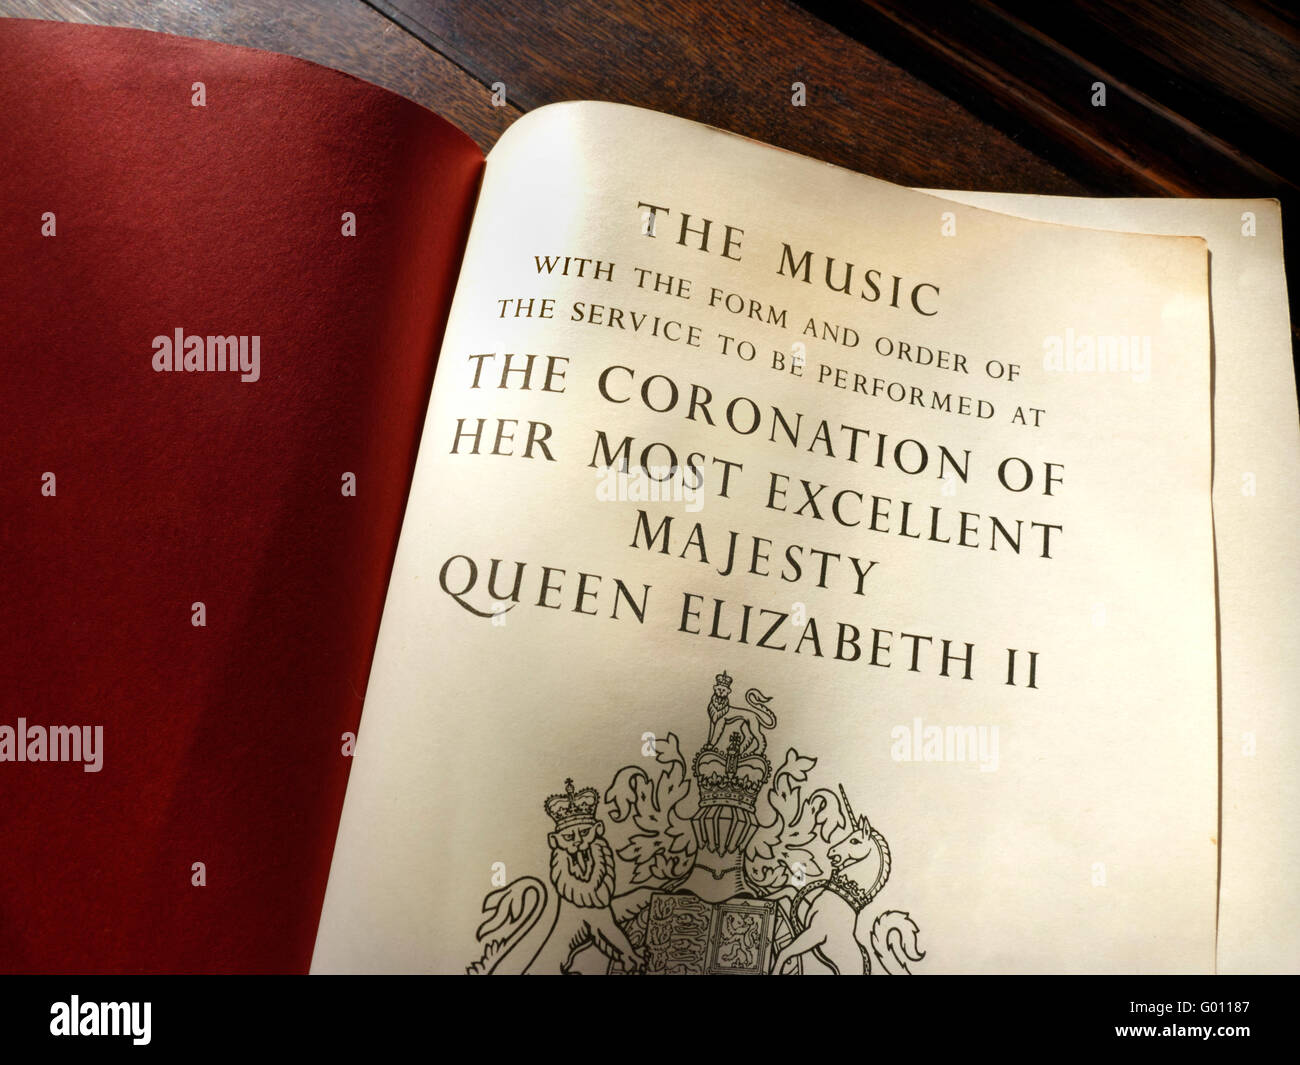 COURONNEMENT 1953 ordre de service original et livre de musique ouvert pour le couronnement de la Reine Elizabeth II 2nd juin 1953 Banque D'Images